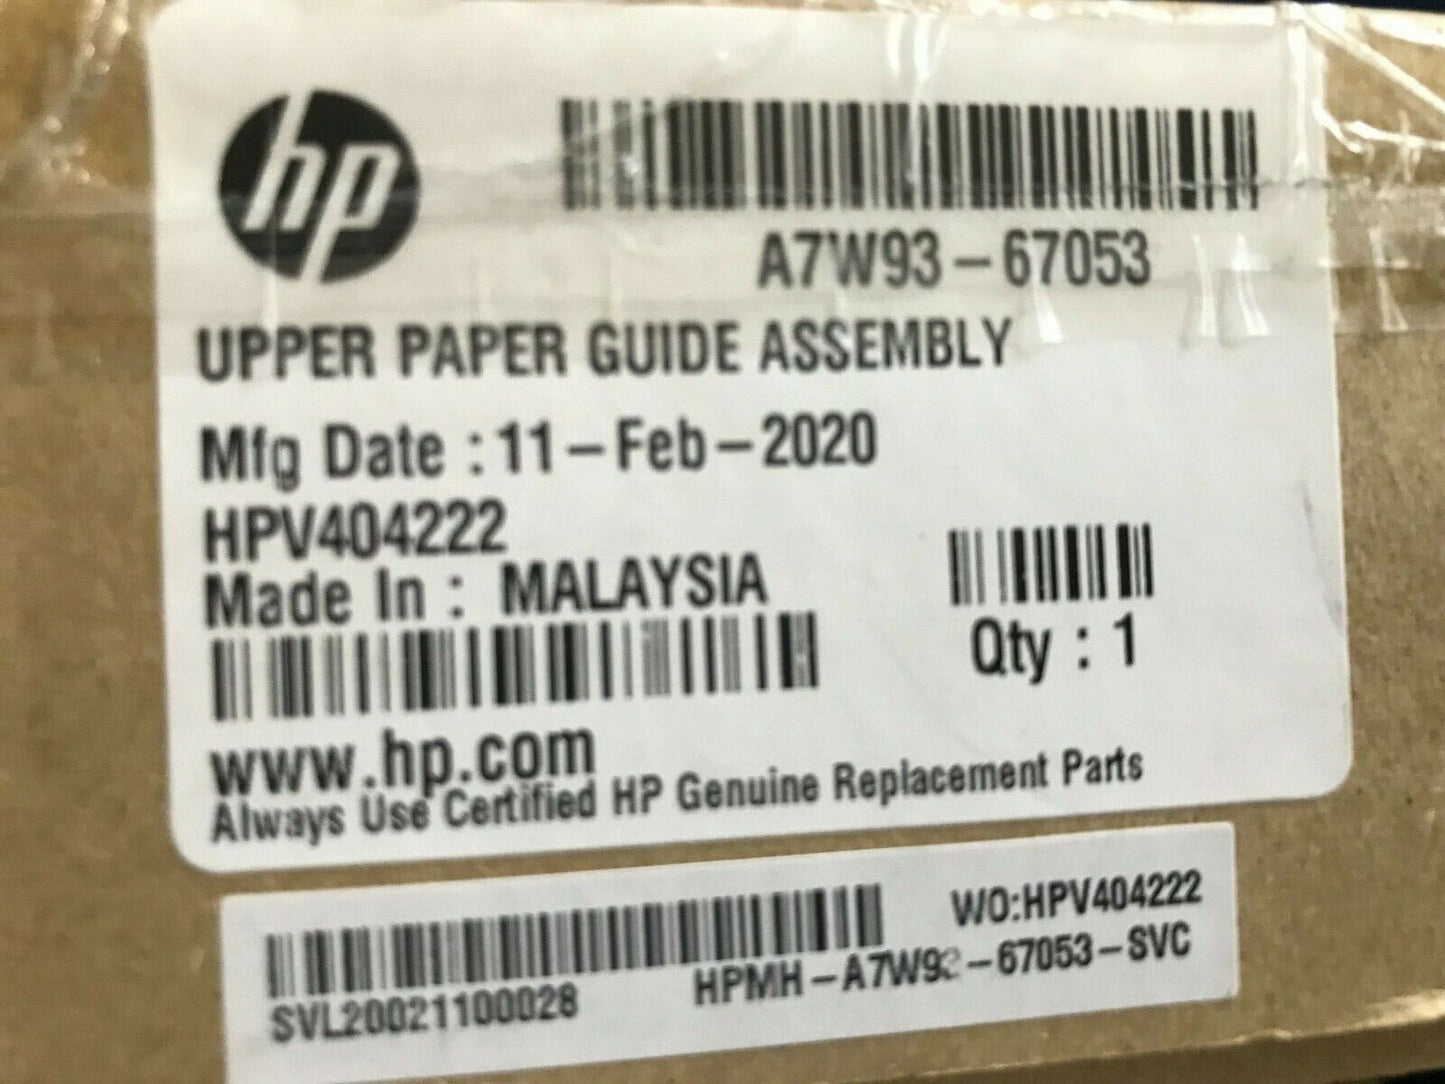 NEW HP A7W93-67053 UPPER PAPER GUIDE ASSY